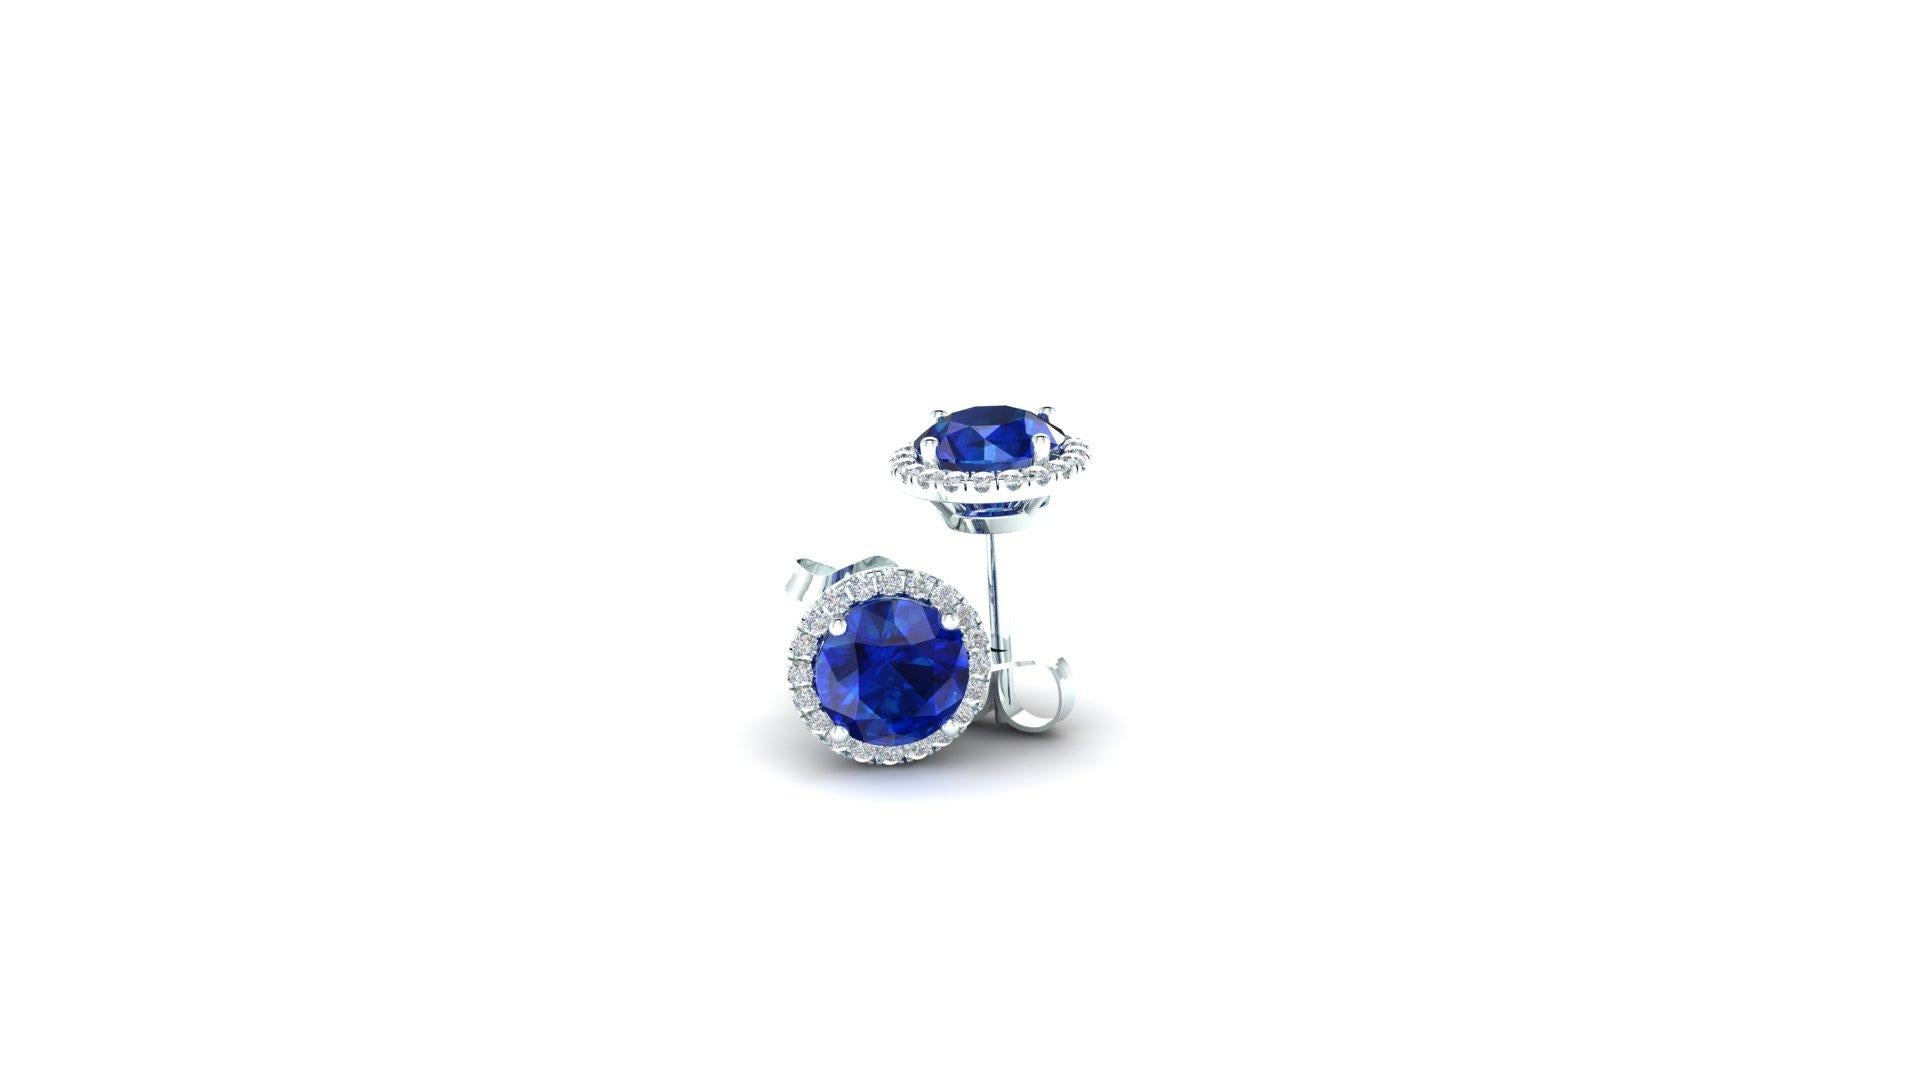 2 Karat blaue Saphire in Diamant-Halo-Ohrstecker handgefertigt in Platin, mit Screw-Back Post,
Brillante blaue Saphire mit Diamantenhalos, die diese großartigen Diamanten noch mehr zur Geltung bringen, mit einem Gesamtkaratgewicht von 0,26